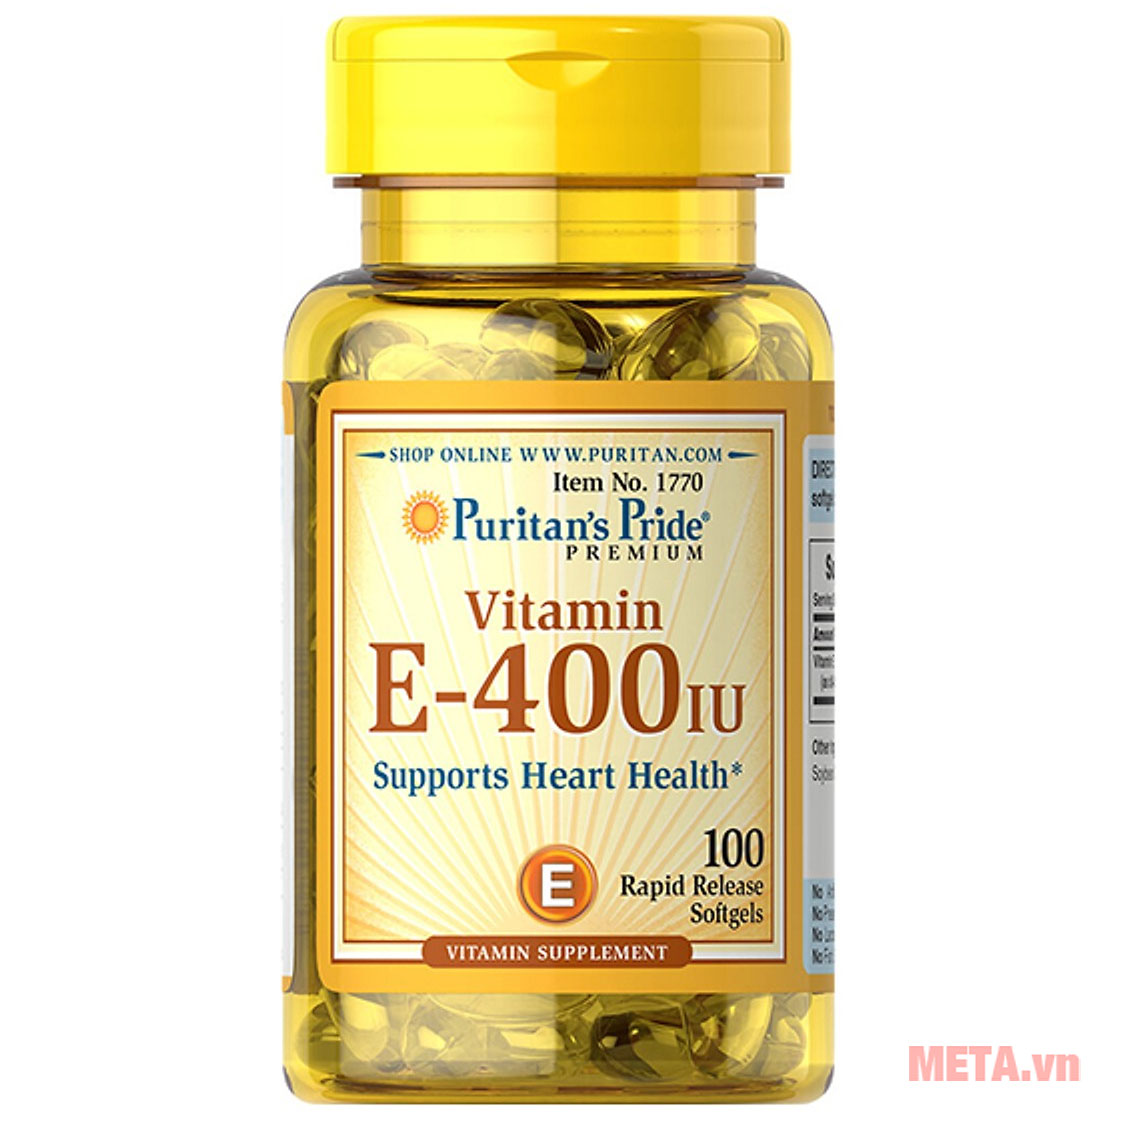 Vitamin E-400 IU Puritan's Pride